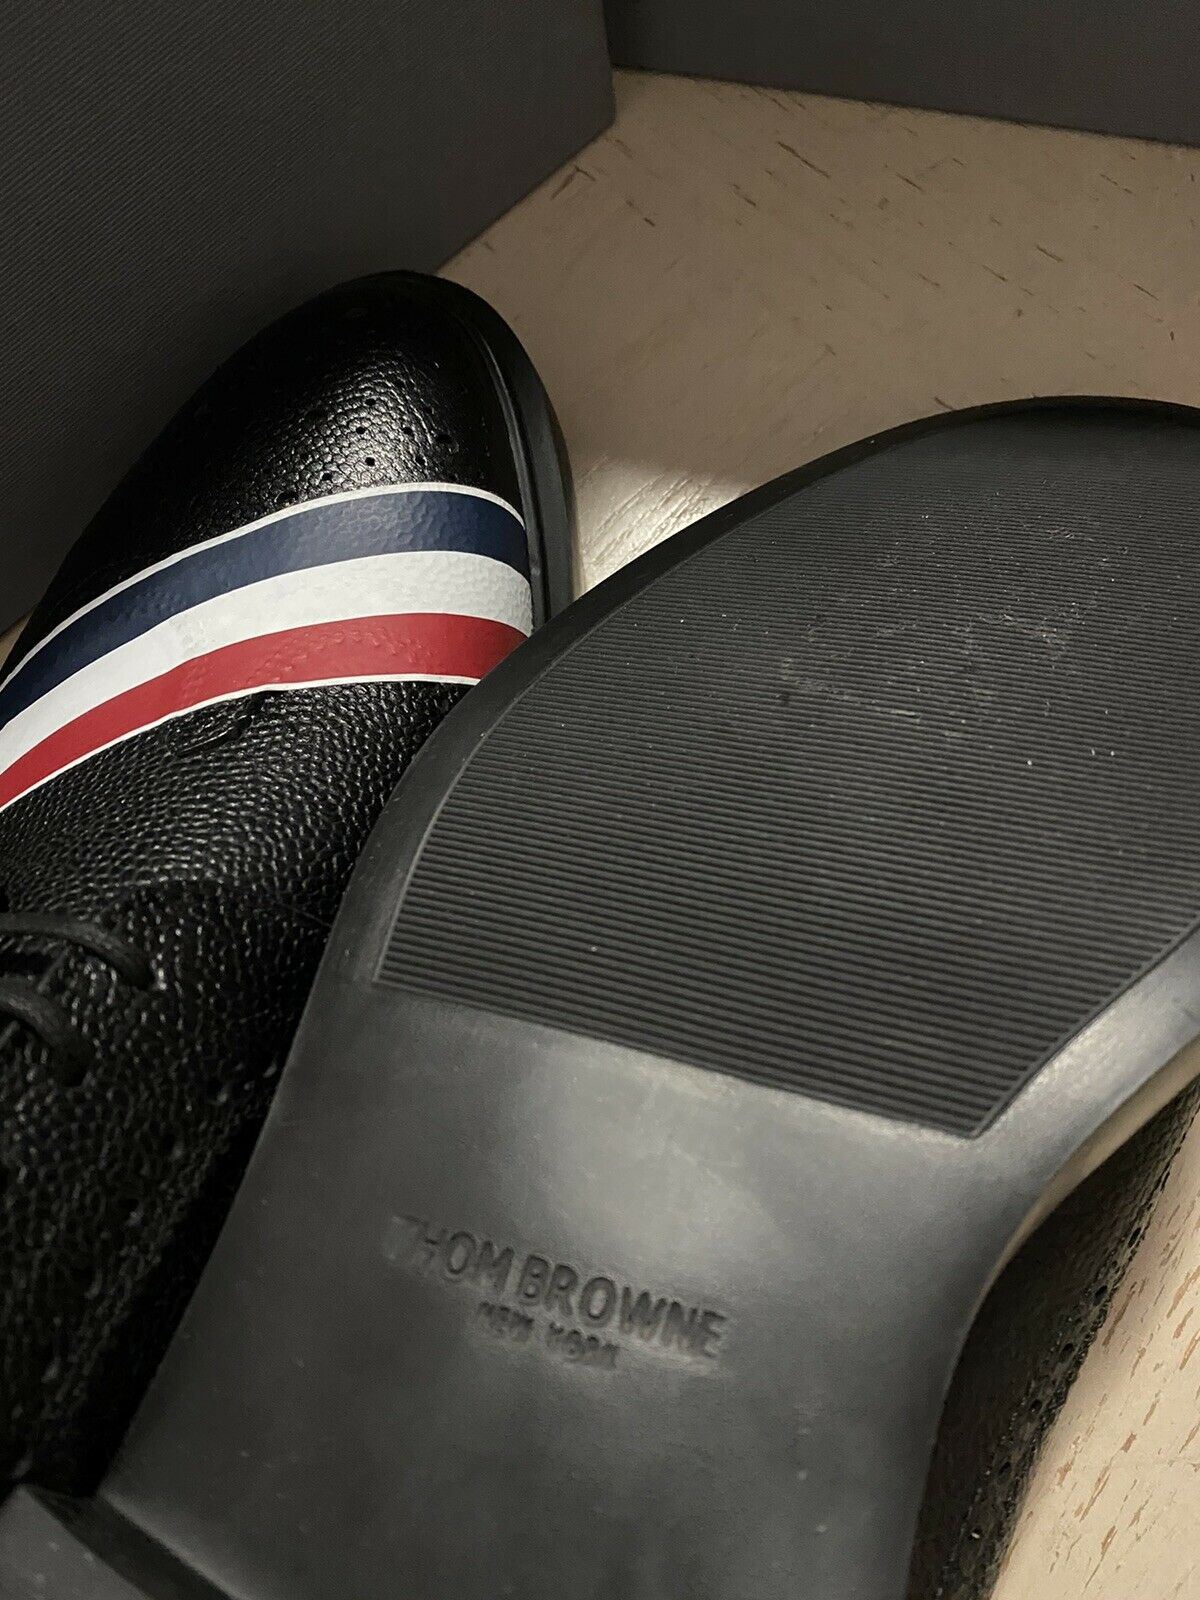 NIB $790 Thom Browne Мужские туфли дерби из шагреневой кожи Туфли черные 10 US/43 EU Ita